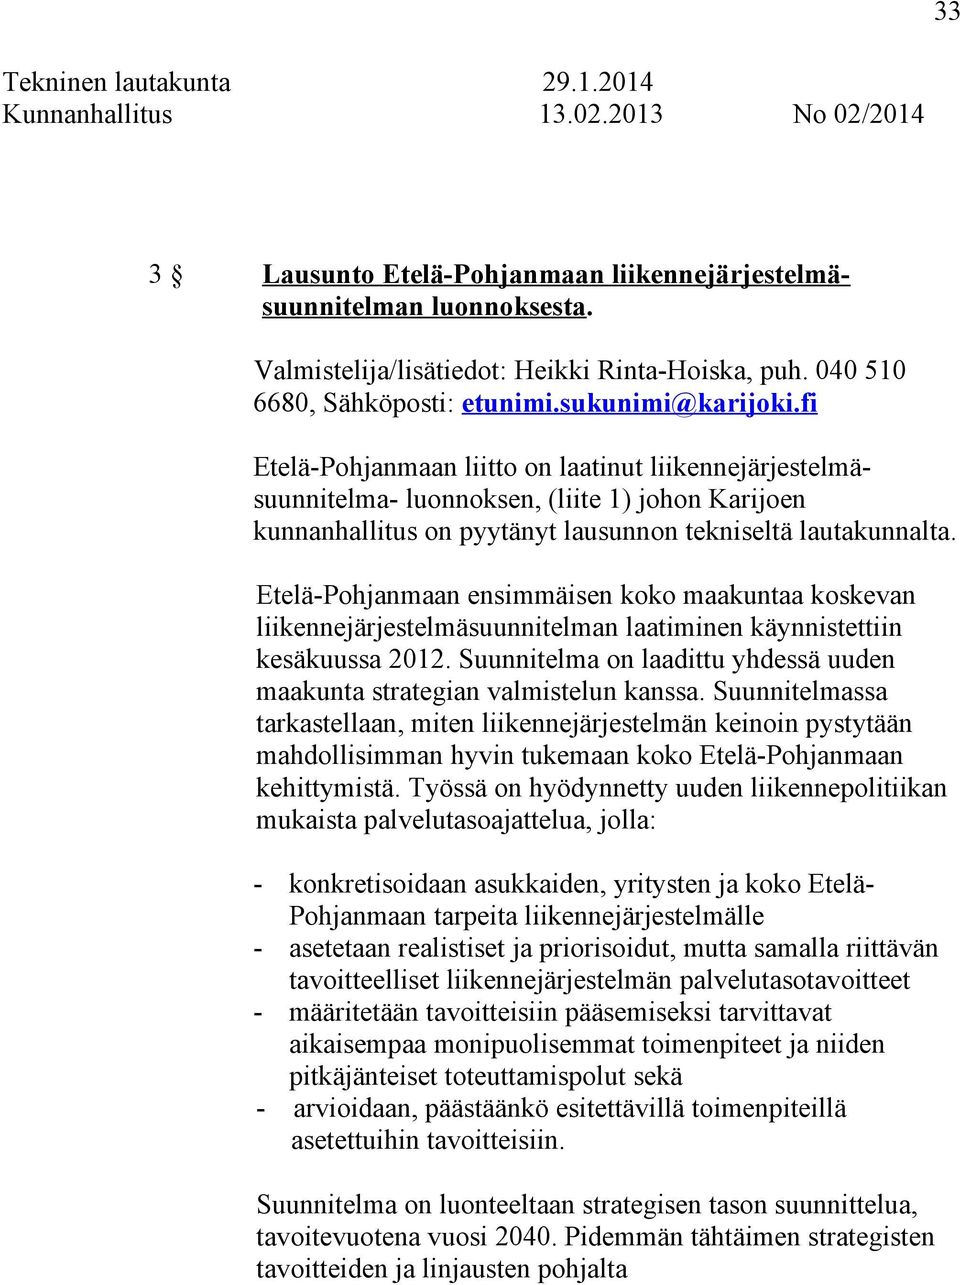 fi Etelä-Pohjanmaan liitto on laatinut liikennejärjestelmäsuunnitelma- luonnoksen, (liite 1) johon Karijoen kunnanhallitus on pyytänyt lausunnon tekniseltä lautakunnalta.